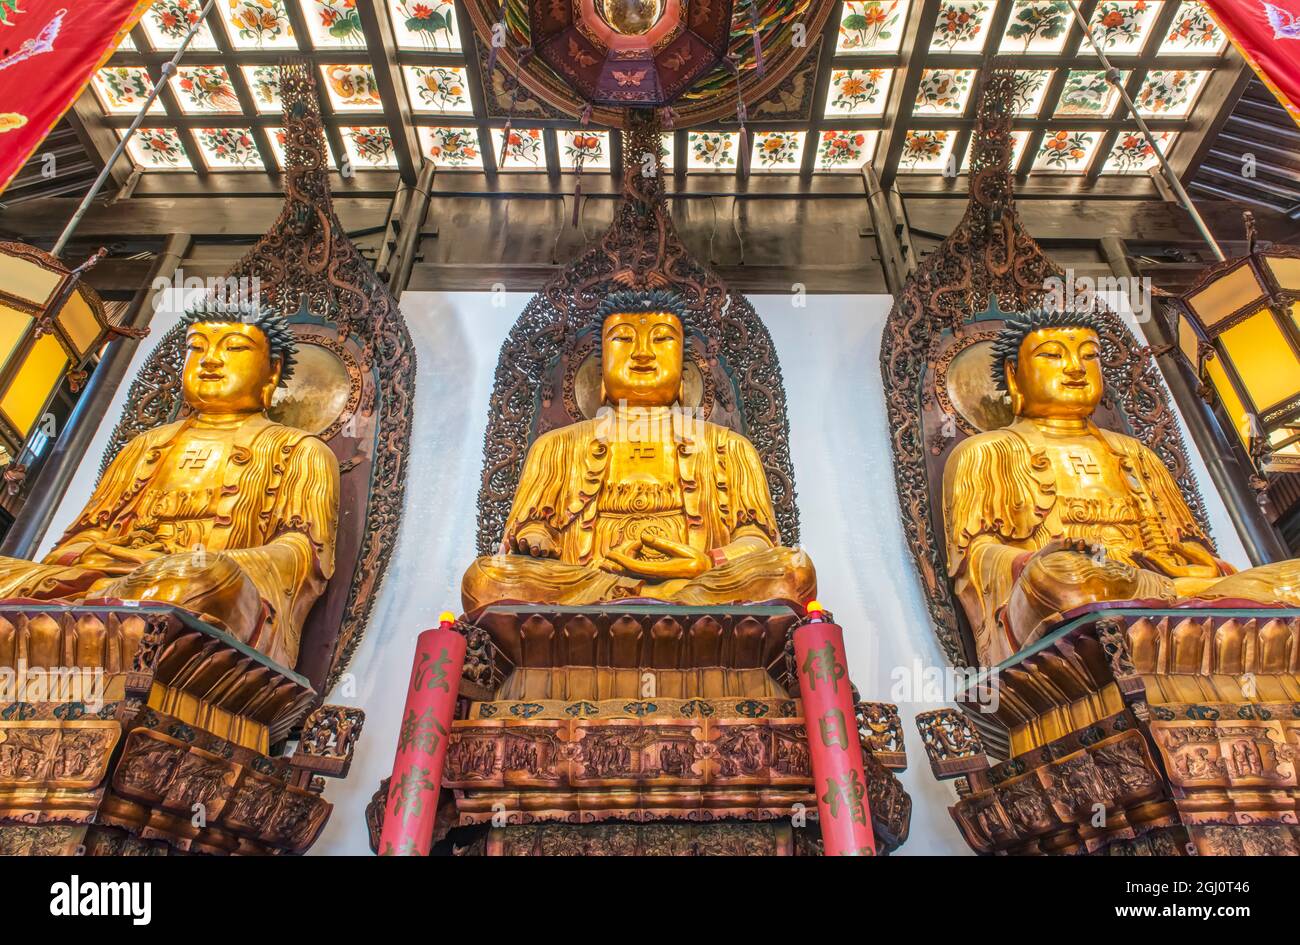 China, Shanghai. Jade Buddha Temple. Stock Photo